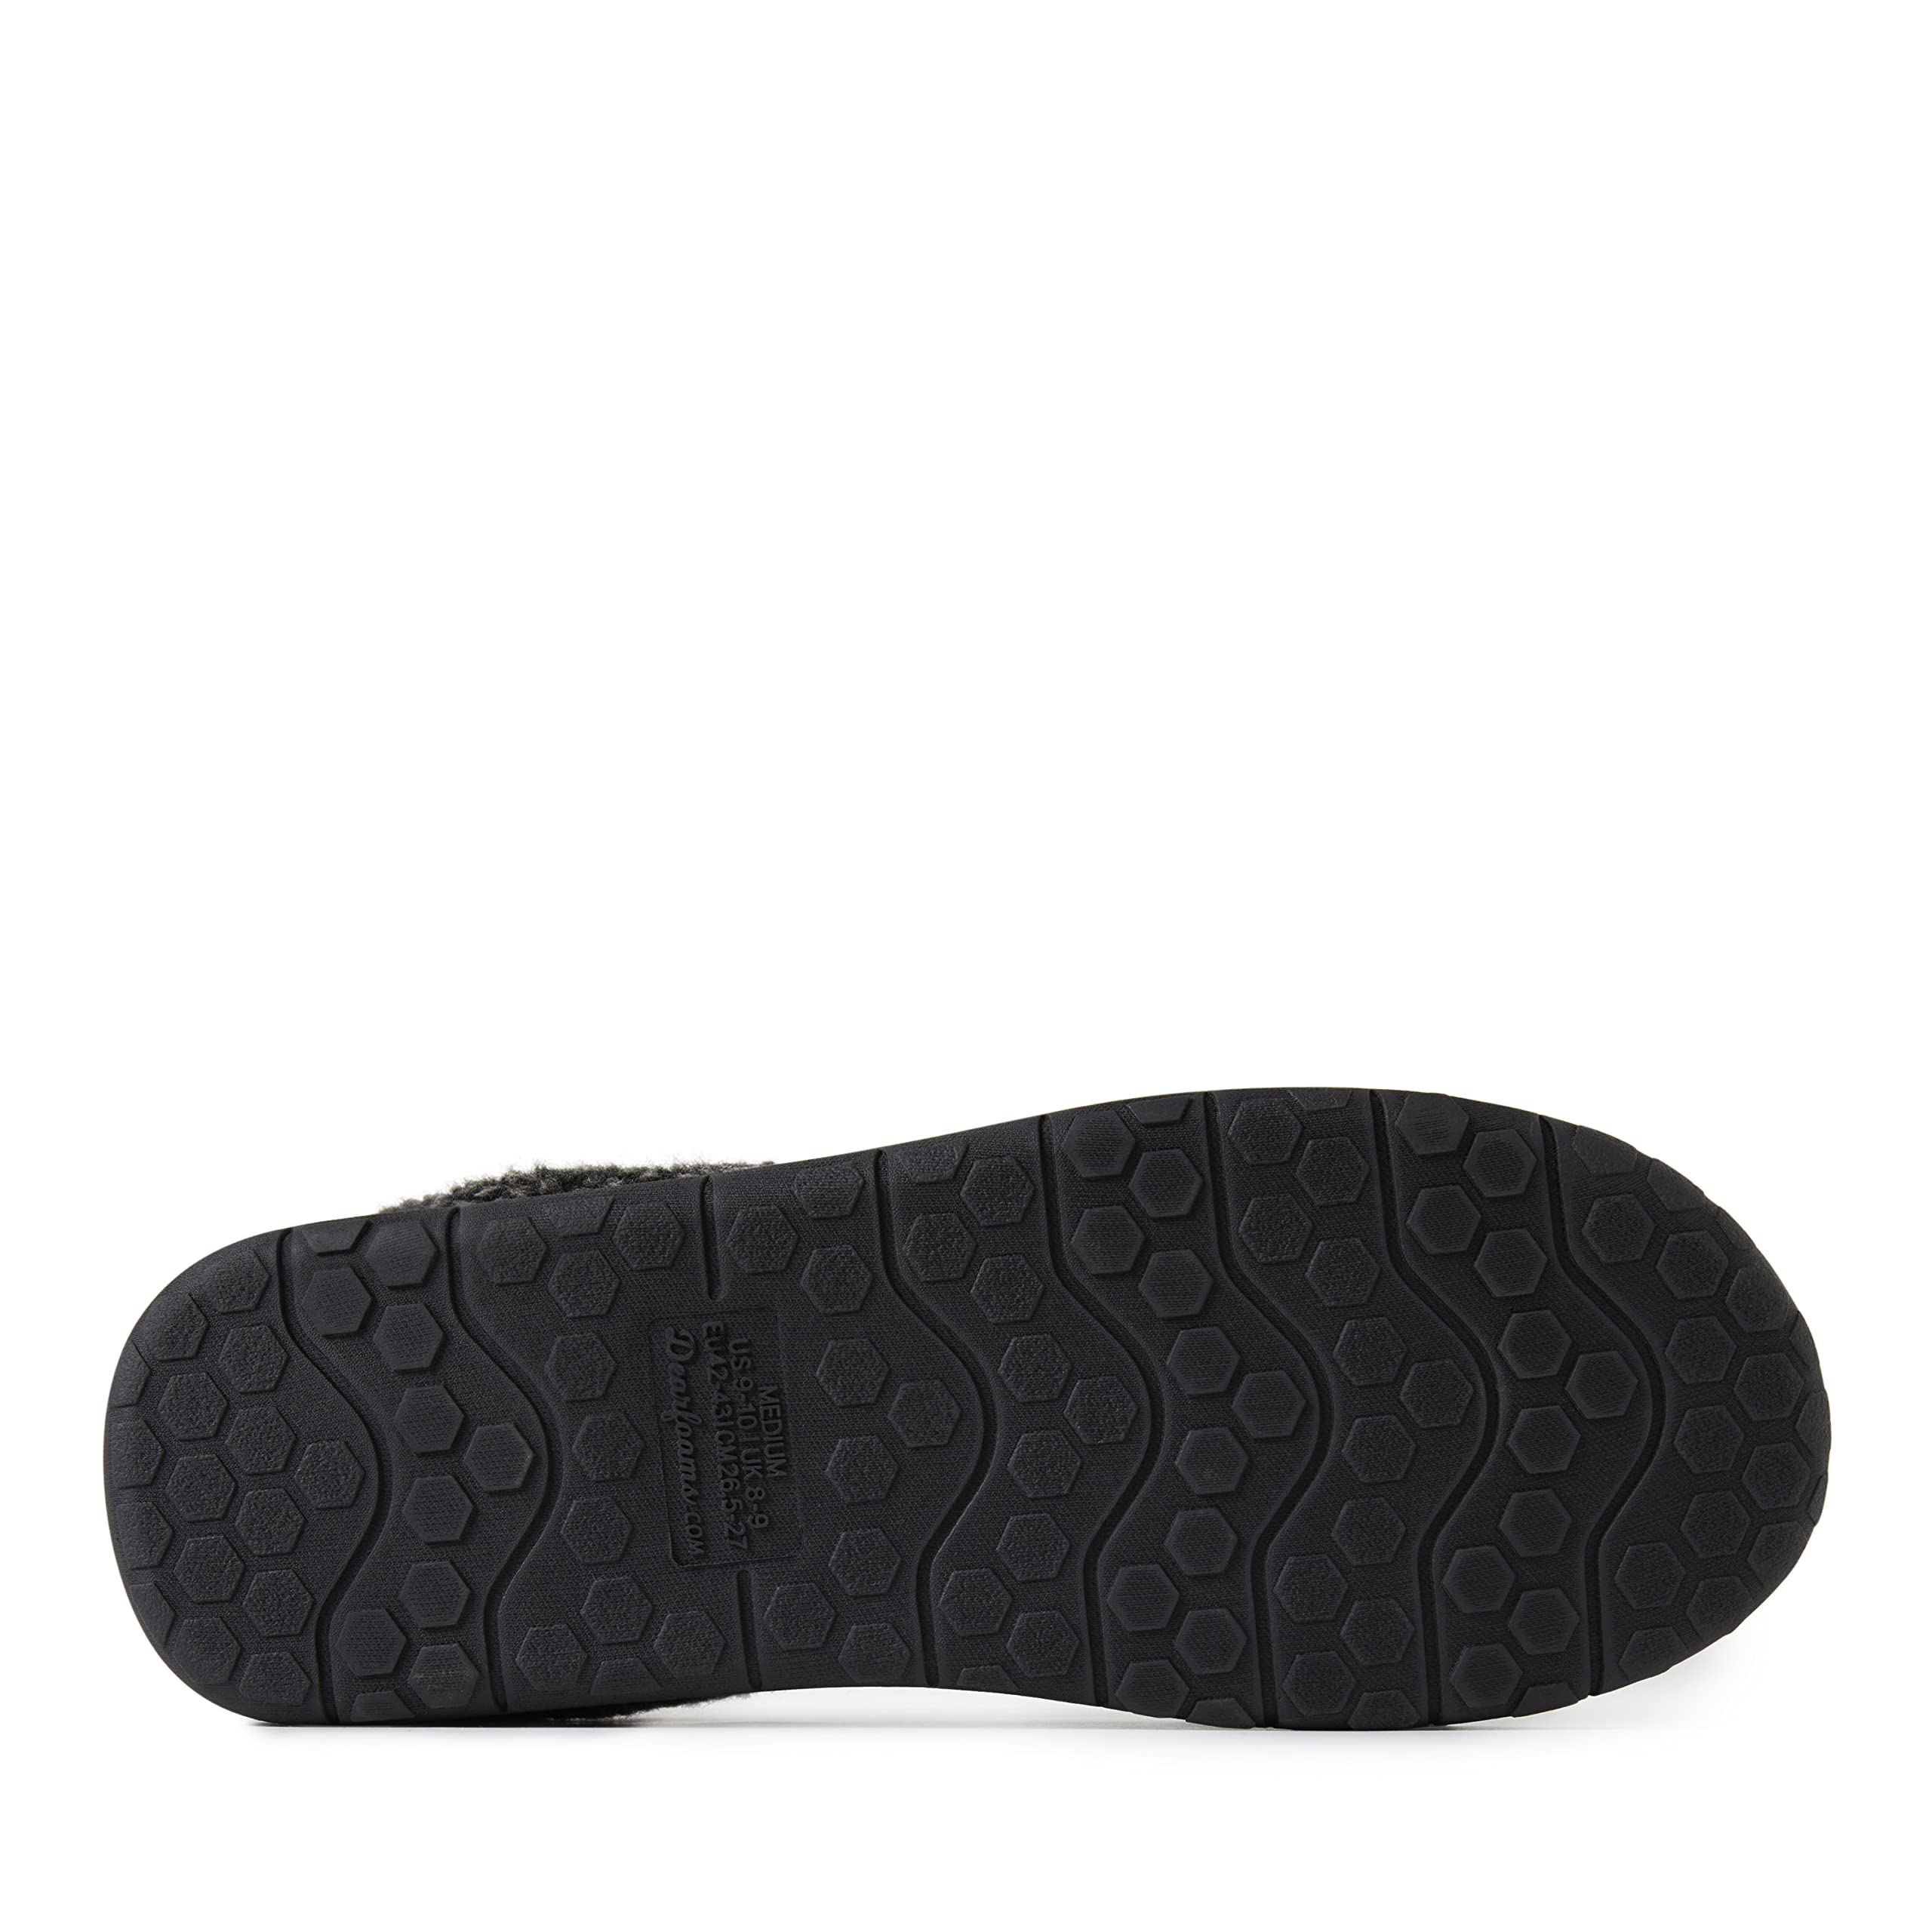 Dearfoams Men’s Brendan Indoor/Outdoor Breathable Memory Foam Clog House Shoe with Wide Widths Slipper